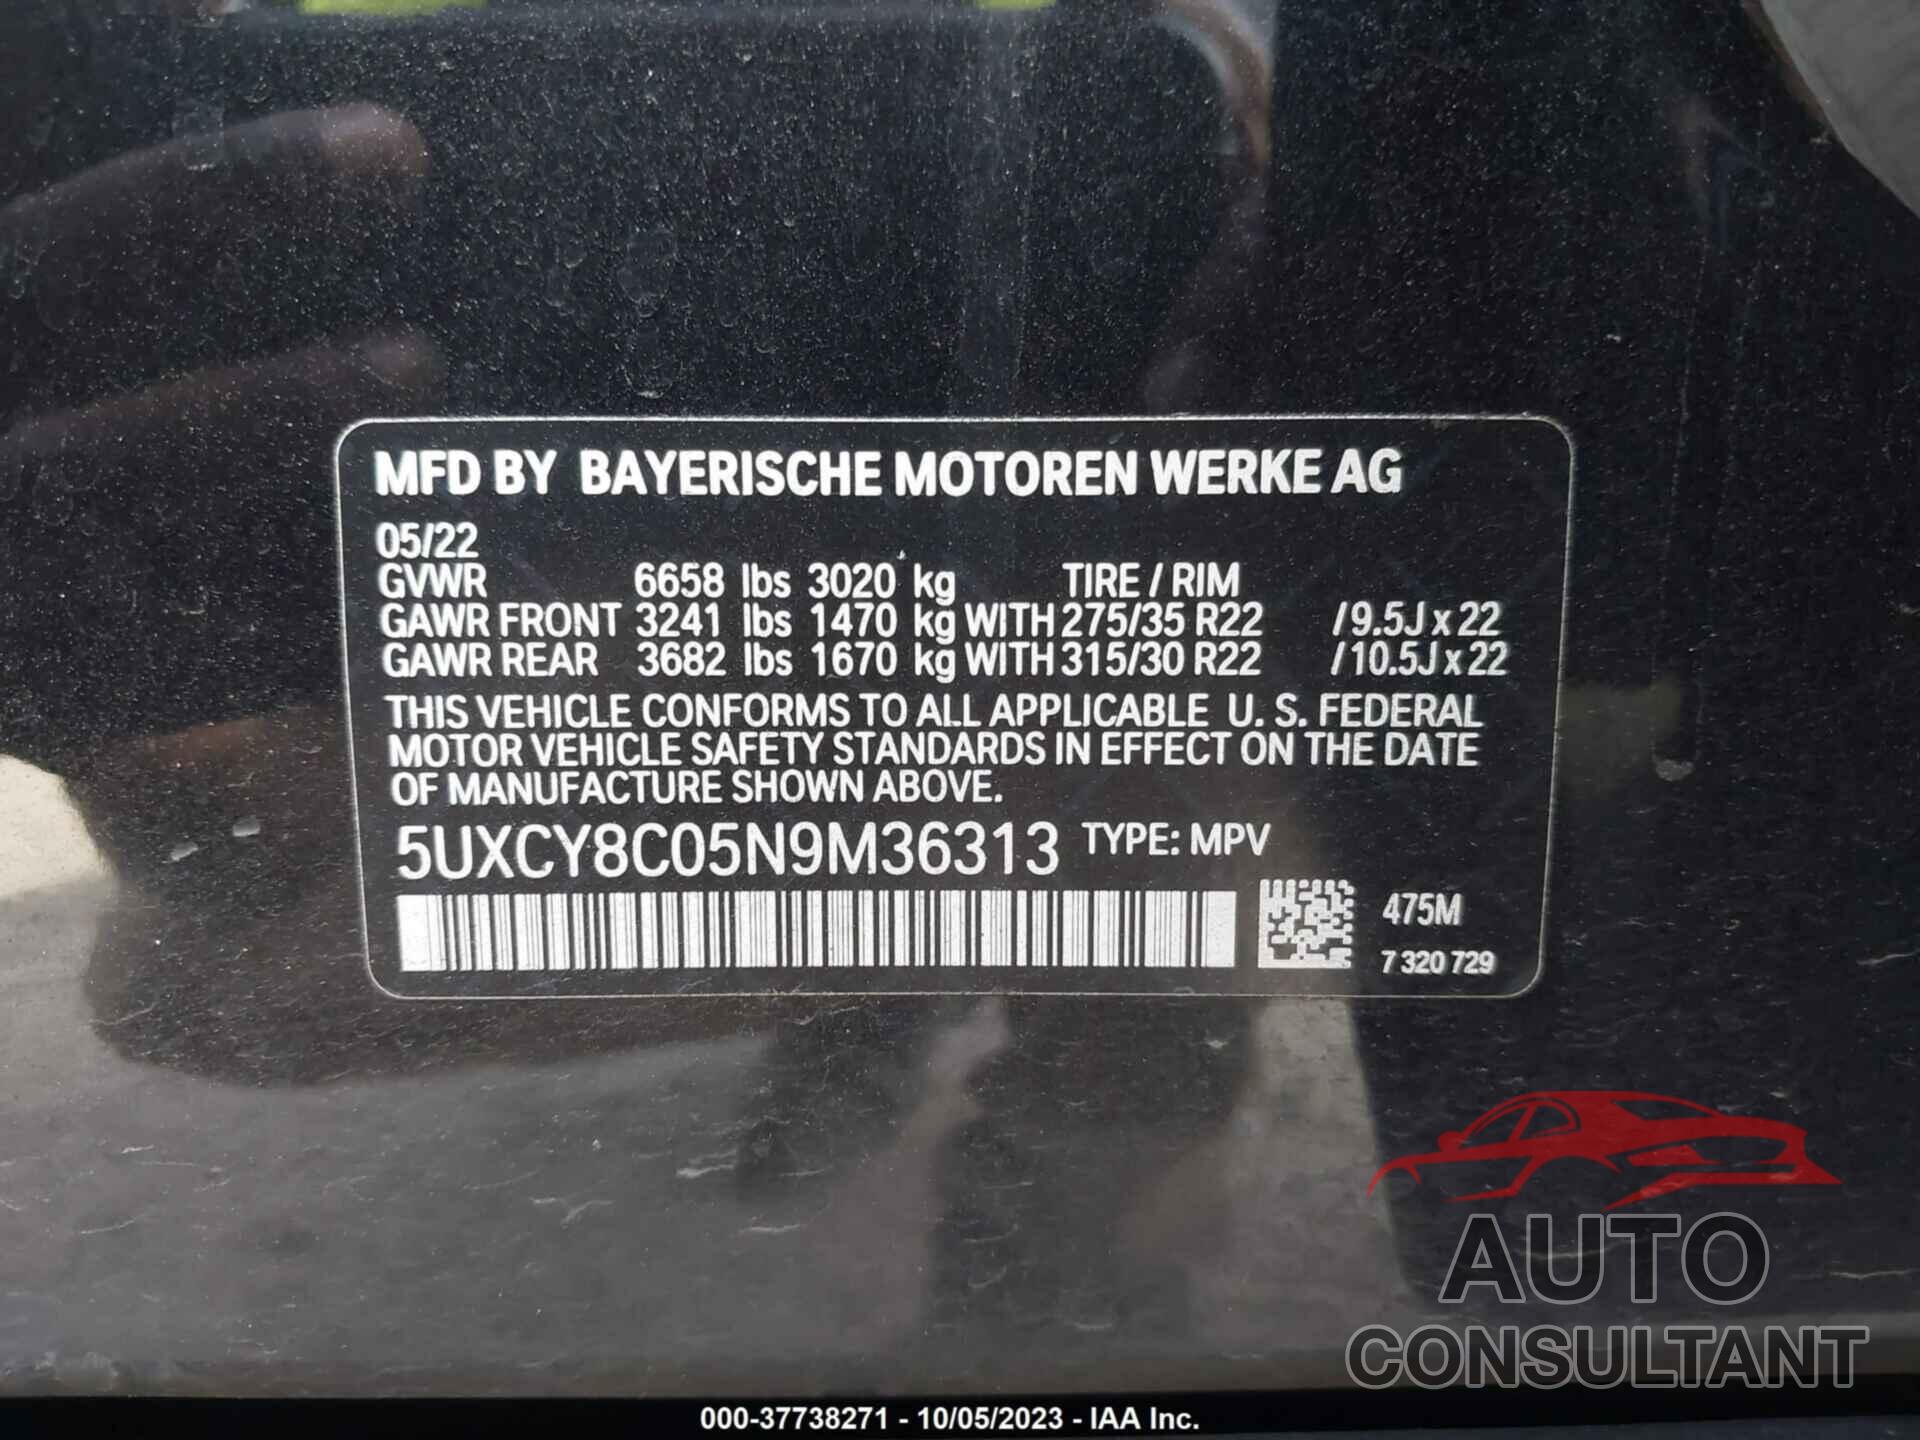 BMW X6 2022 - 5UXCY8C05N9M36313